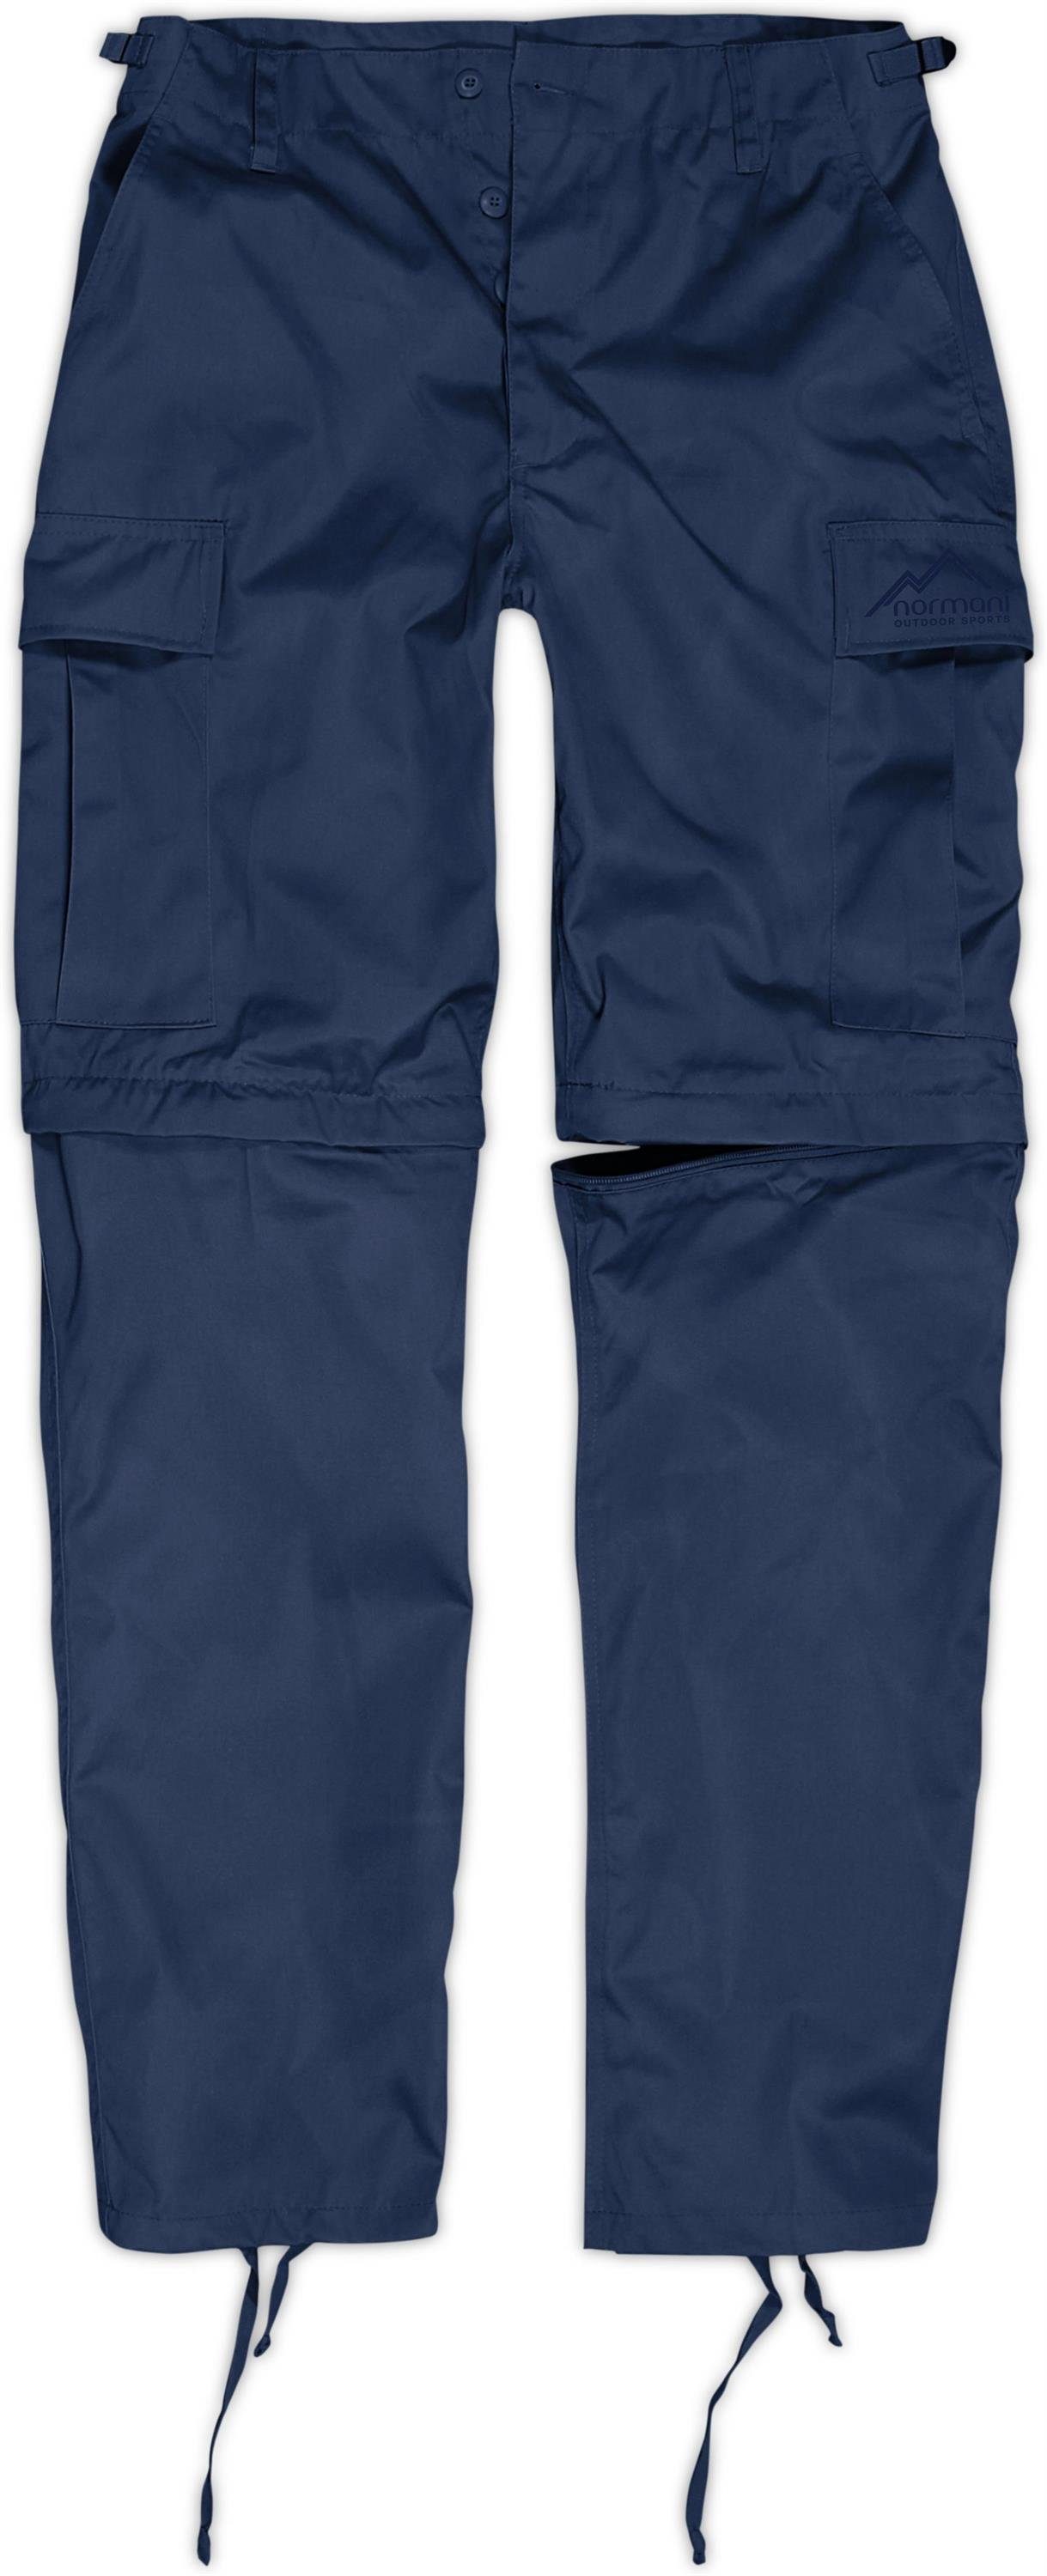 normani Zip-off-Hose Herren 2-in-1 Zip-Off BDU Rangerhose Pioneer Outdoorhose Feldhose mit per Reißverschluss abtrennbaren Hosenbeinen